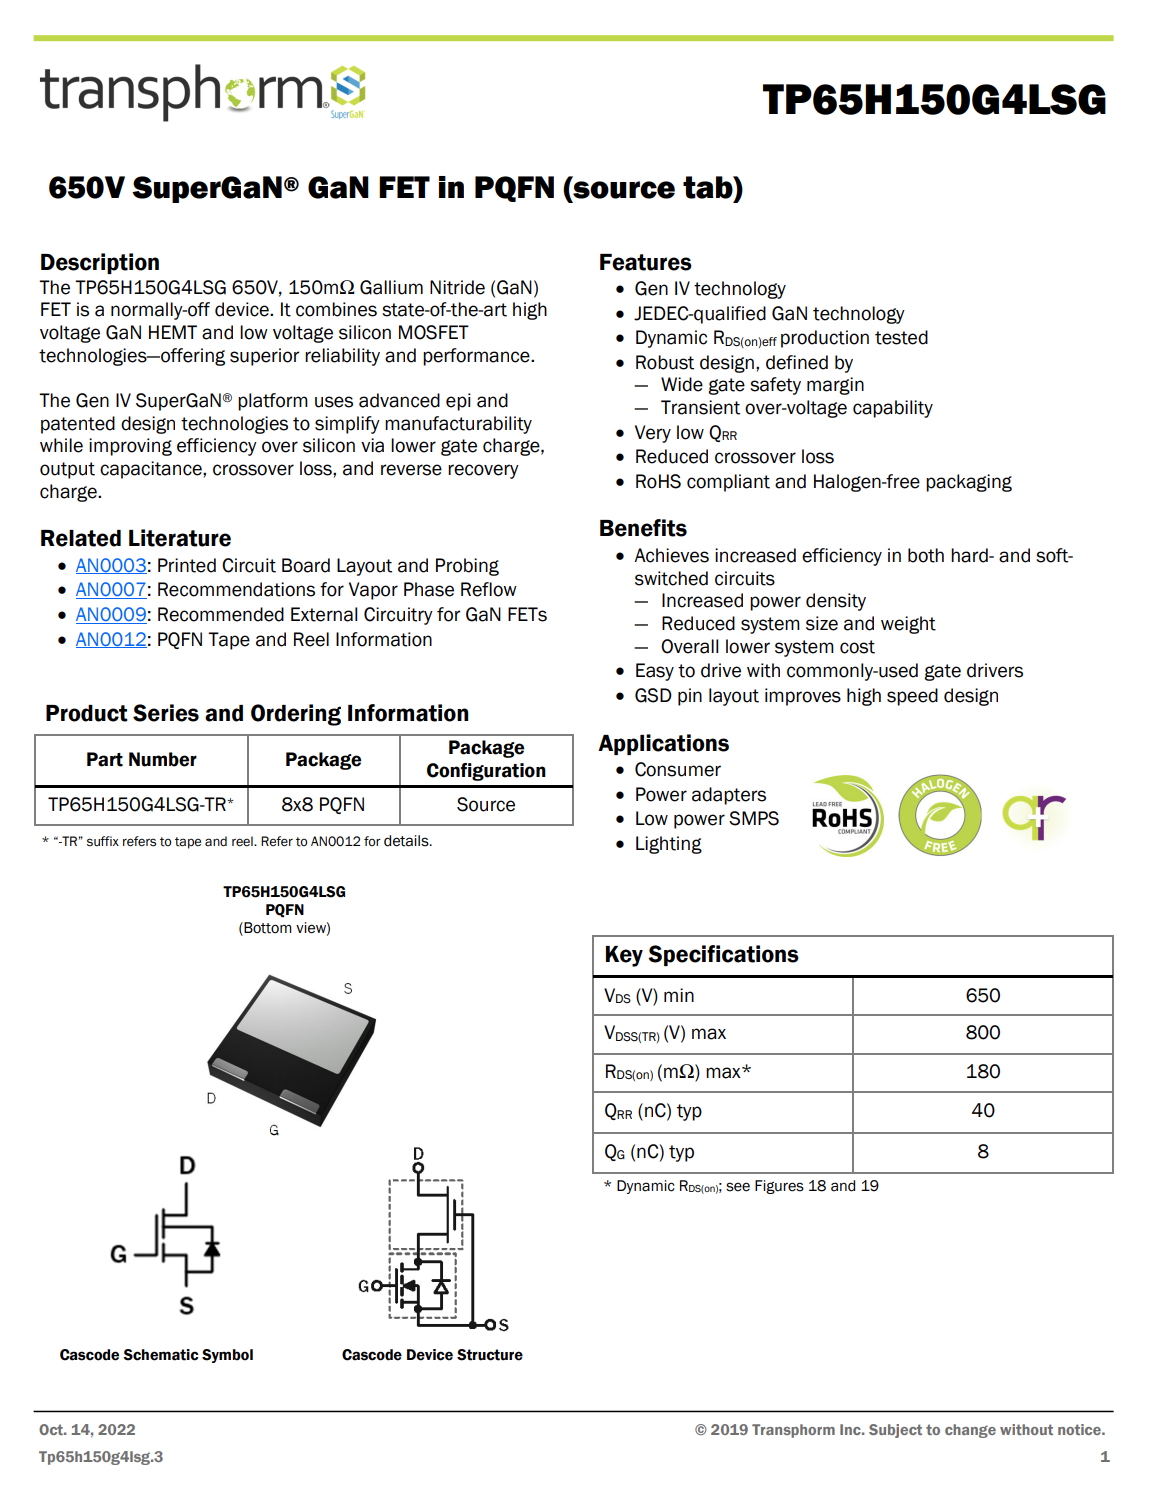 锐仕嘉&transphorm 330W TPPFC+LLC氮化镓电源方案解析-充电头网